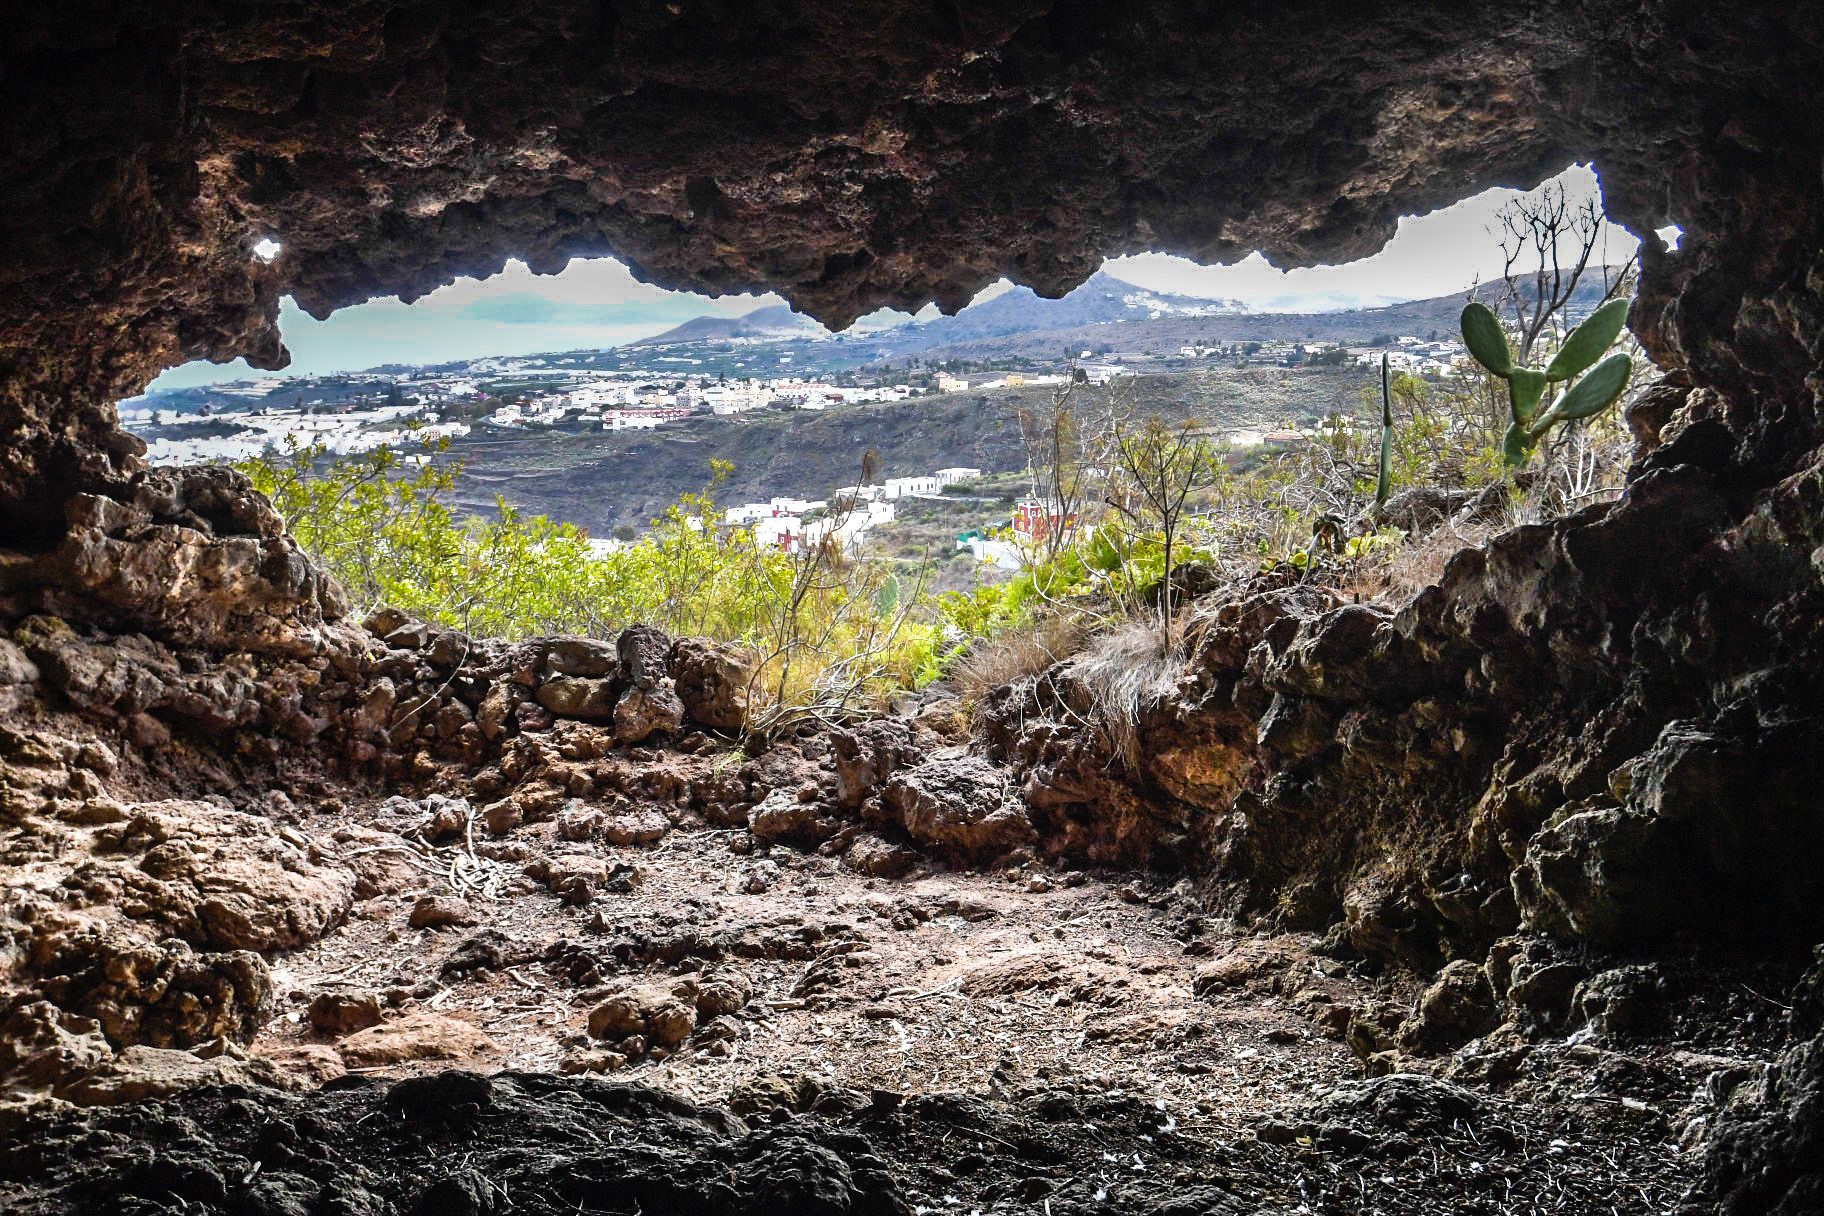 Dos desprendimientos de tierra y rocas impiden desde hace cinco meses visitar las cuevas aborígenes del «valeroso jefe indígena canario» Doramas, en la antigua Moya.